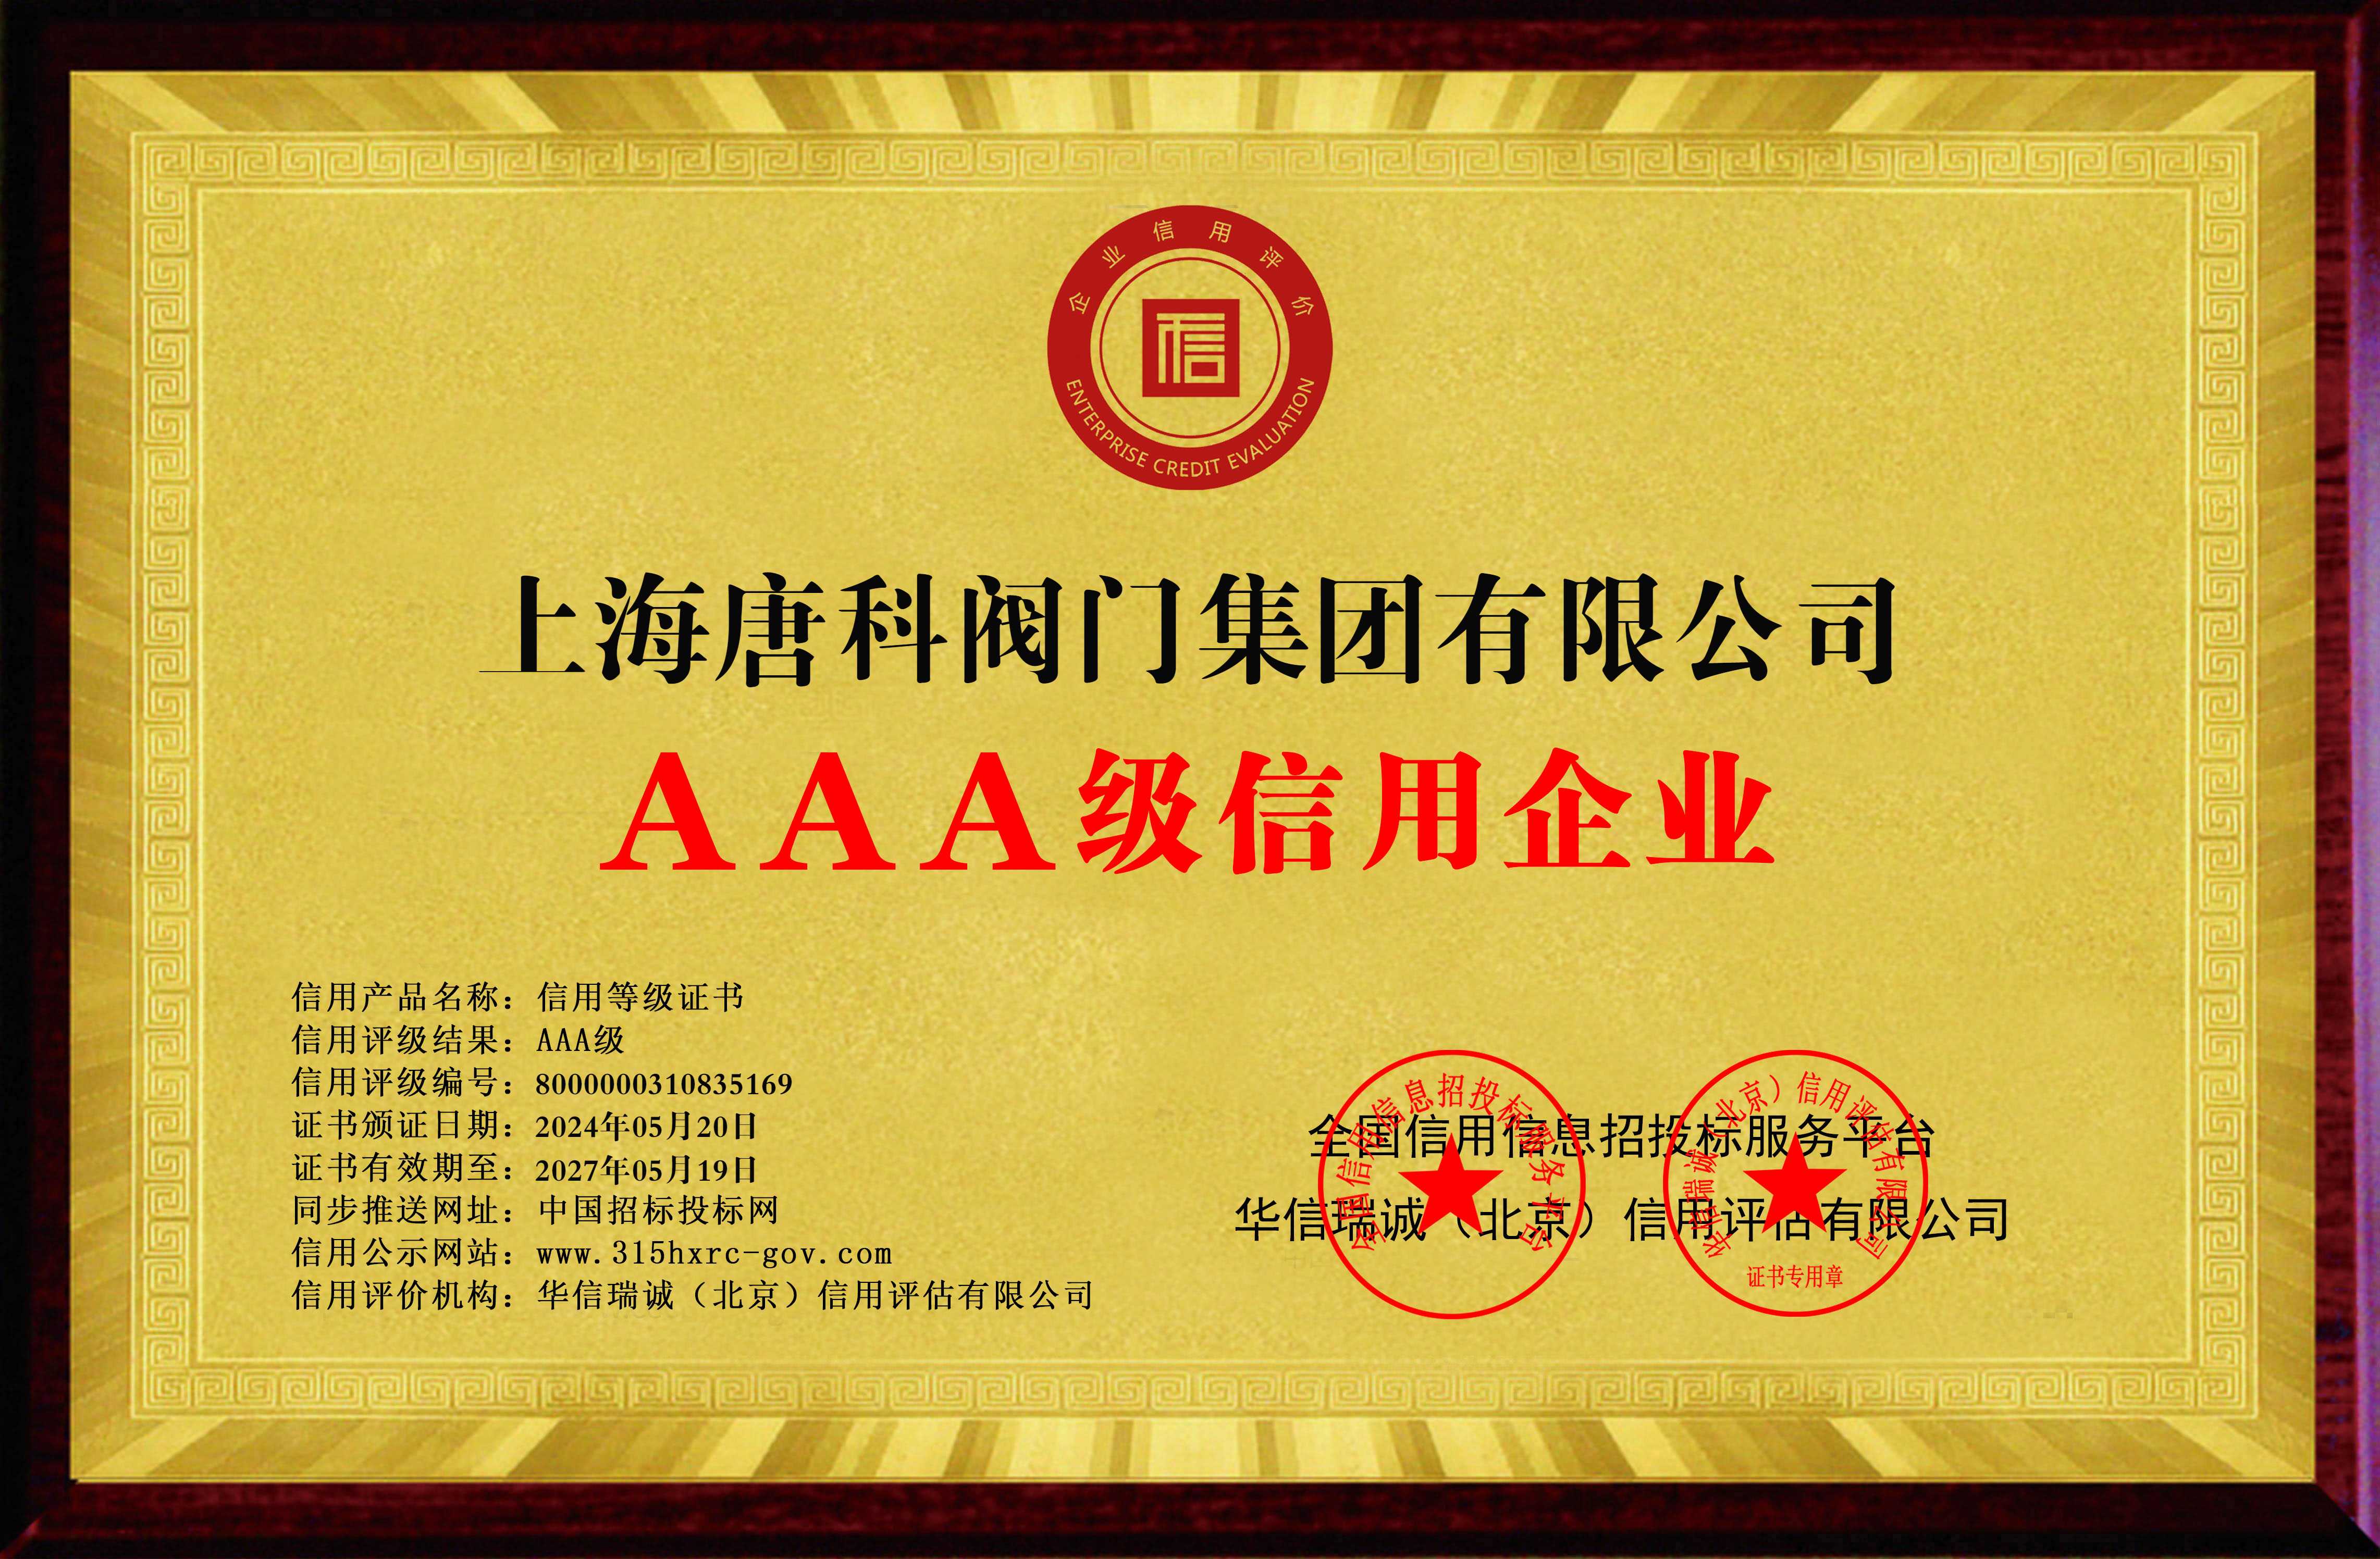 1 上海唐科閥門集團有限公司-AAA級信用企業 雙網-銅牌黃底